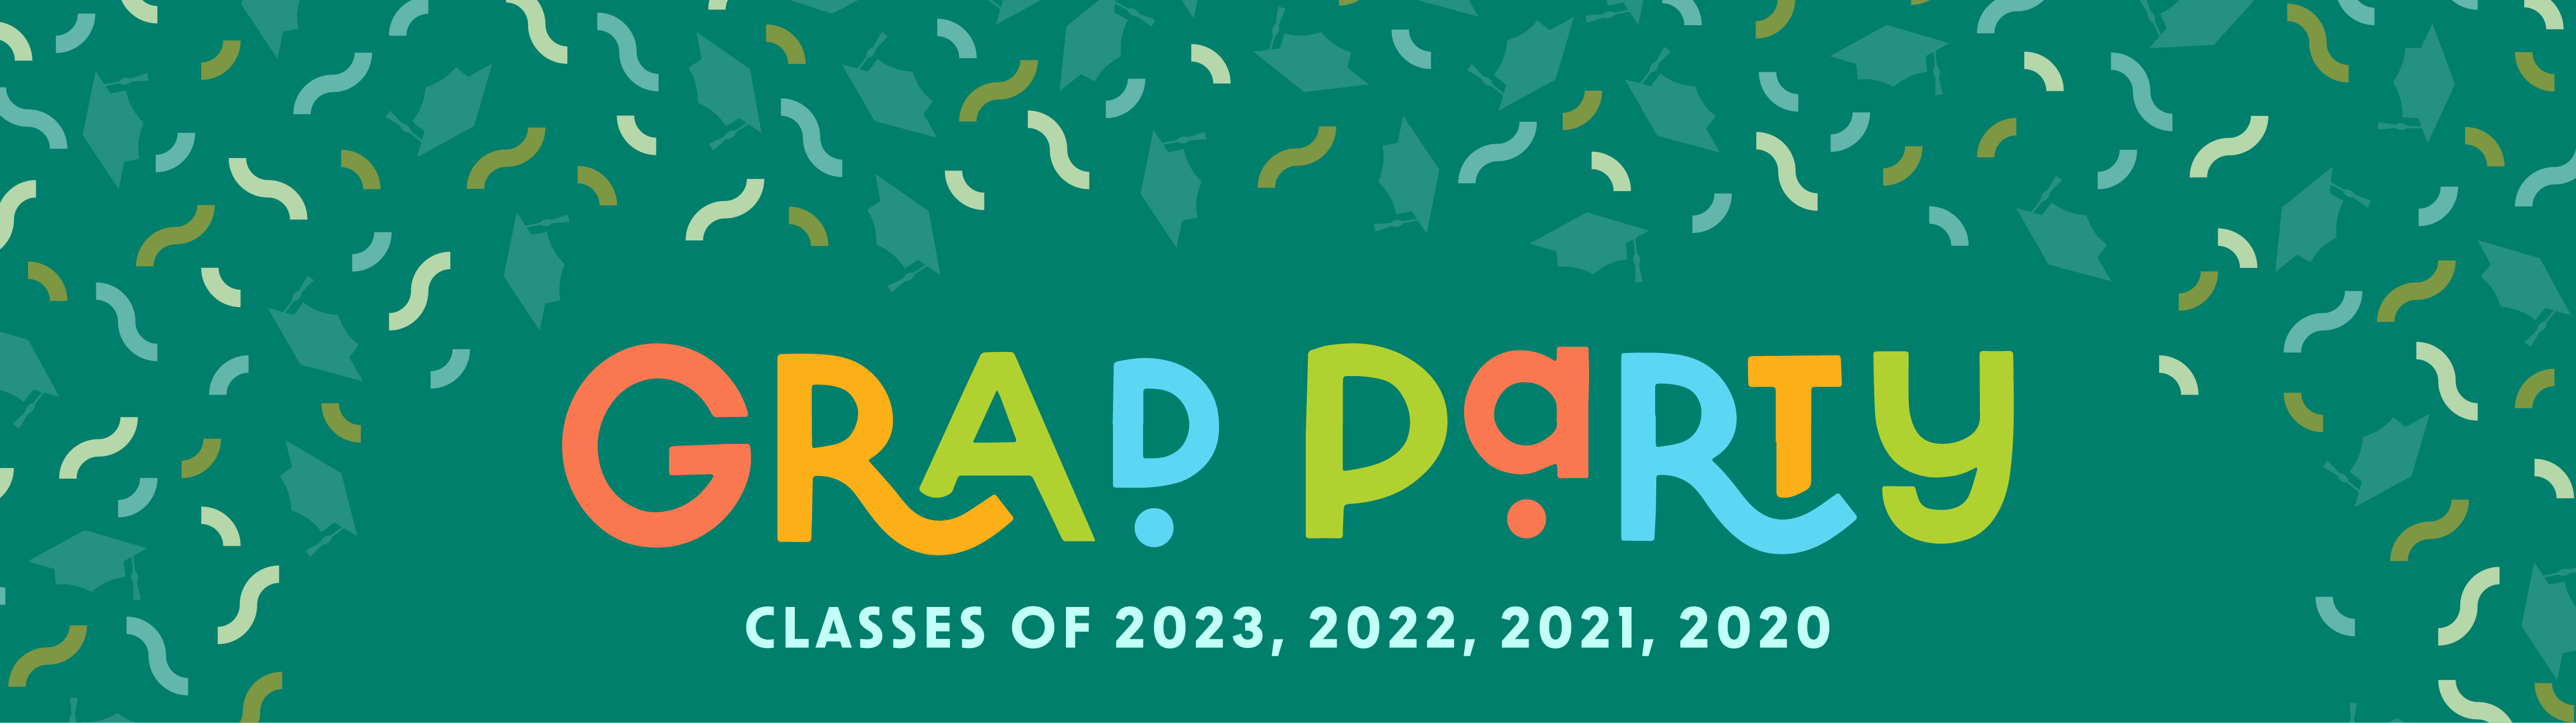 Grad Party classes of 2023, 2022, 2021, 2020